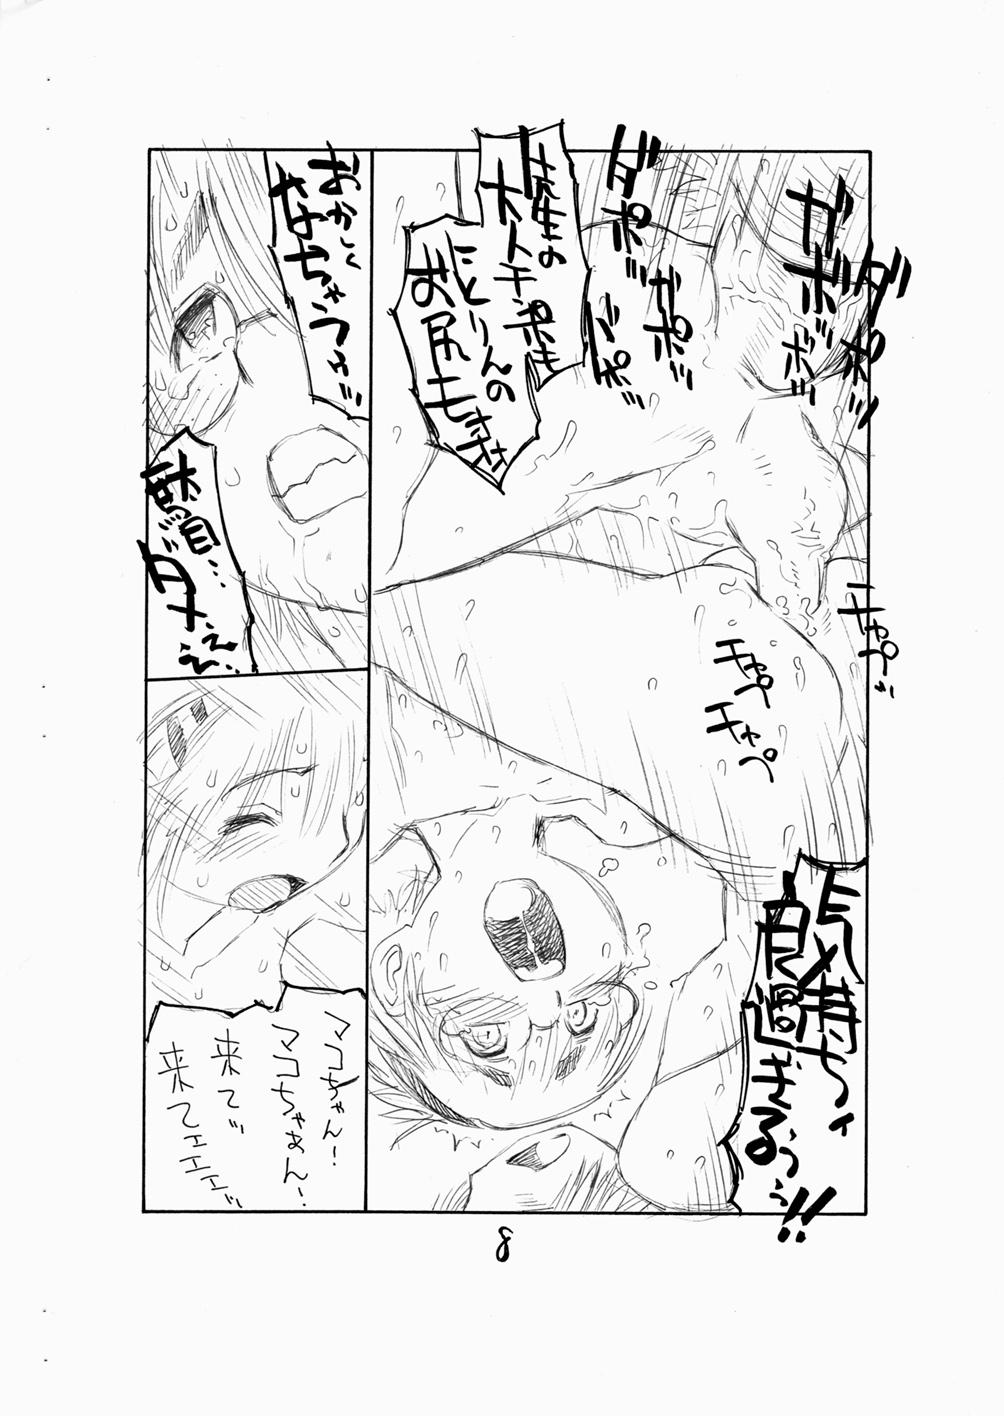 Big Penis Bokutachi Otokonoko 3 - Hourou musuko Abuse - Page 10